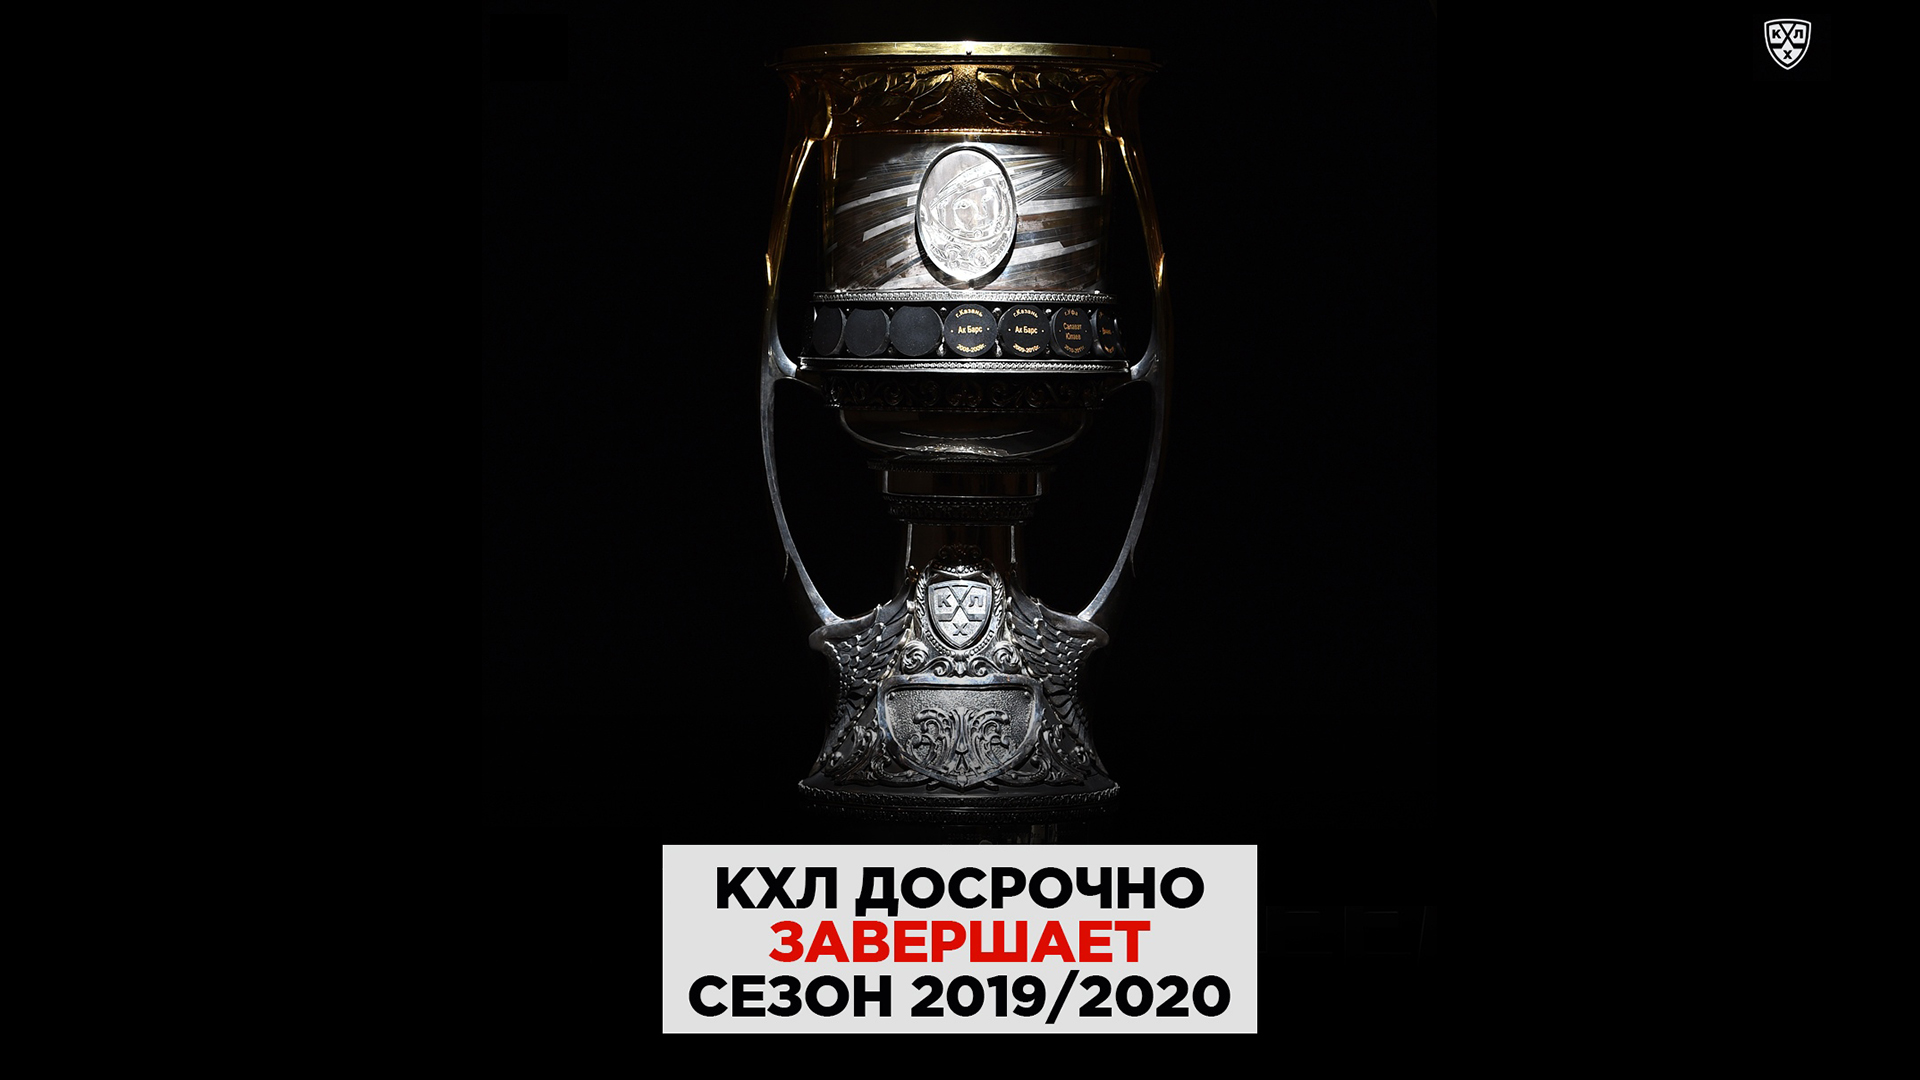 КХЛ приняла решение о досрочном завершении сезона 2019/20